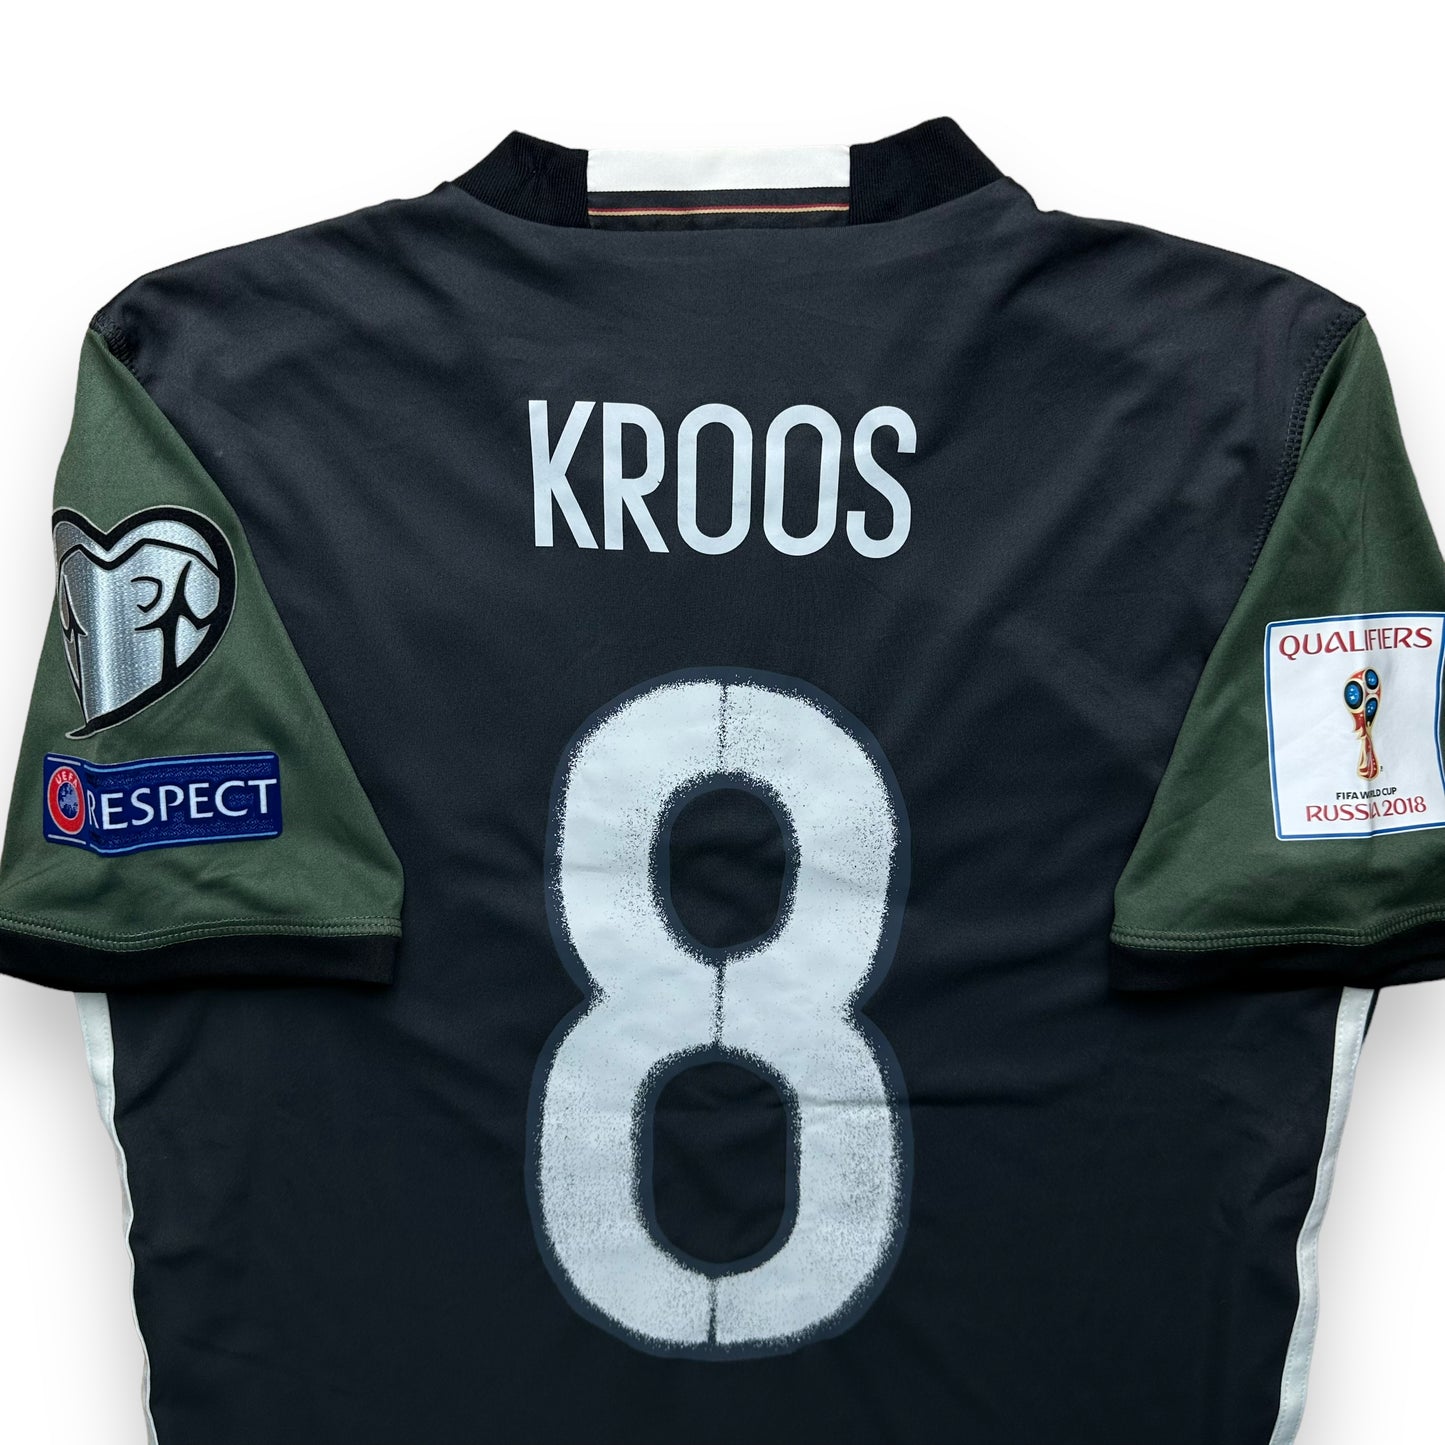 Germany 2016 Away Shirt (S) Kroos #8